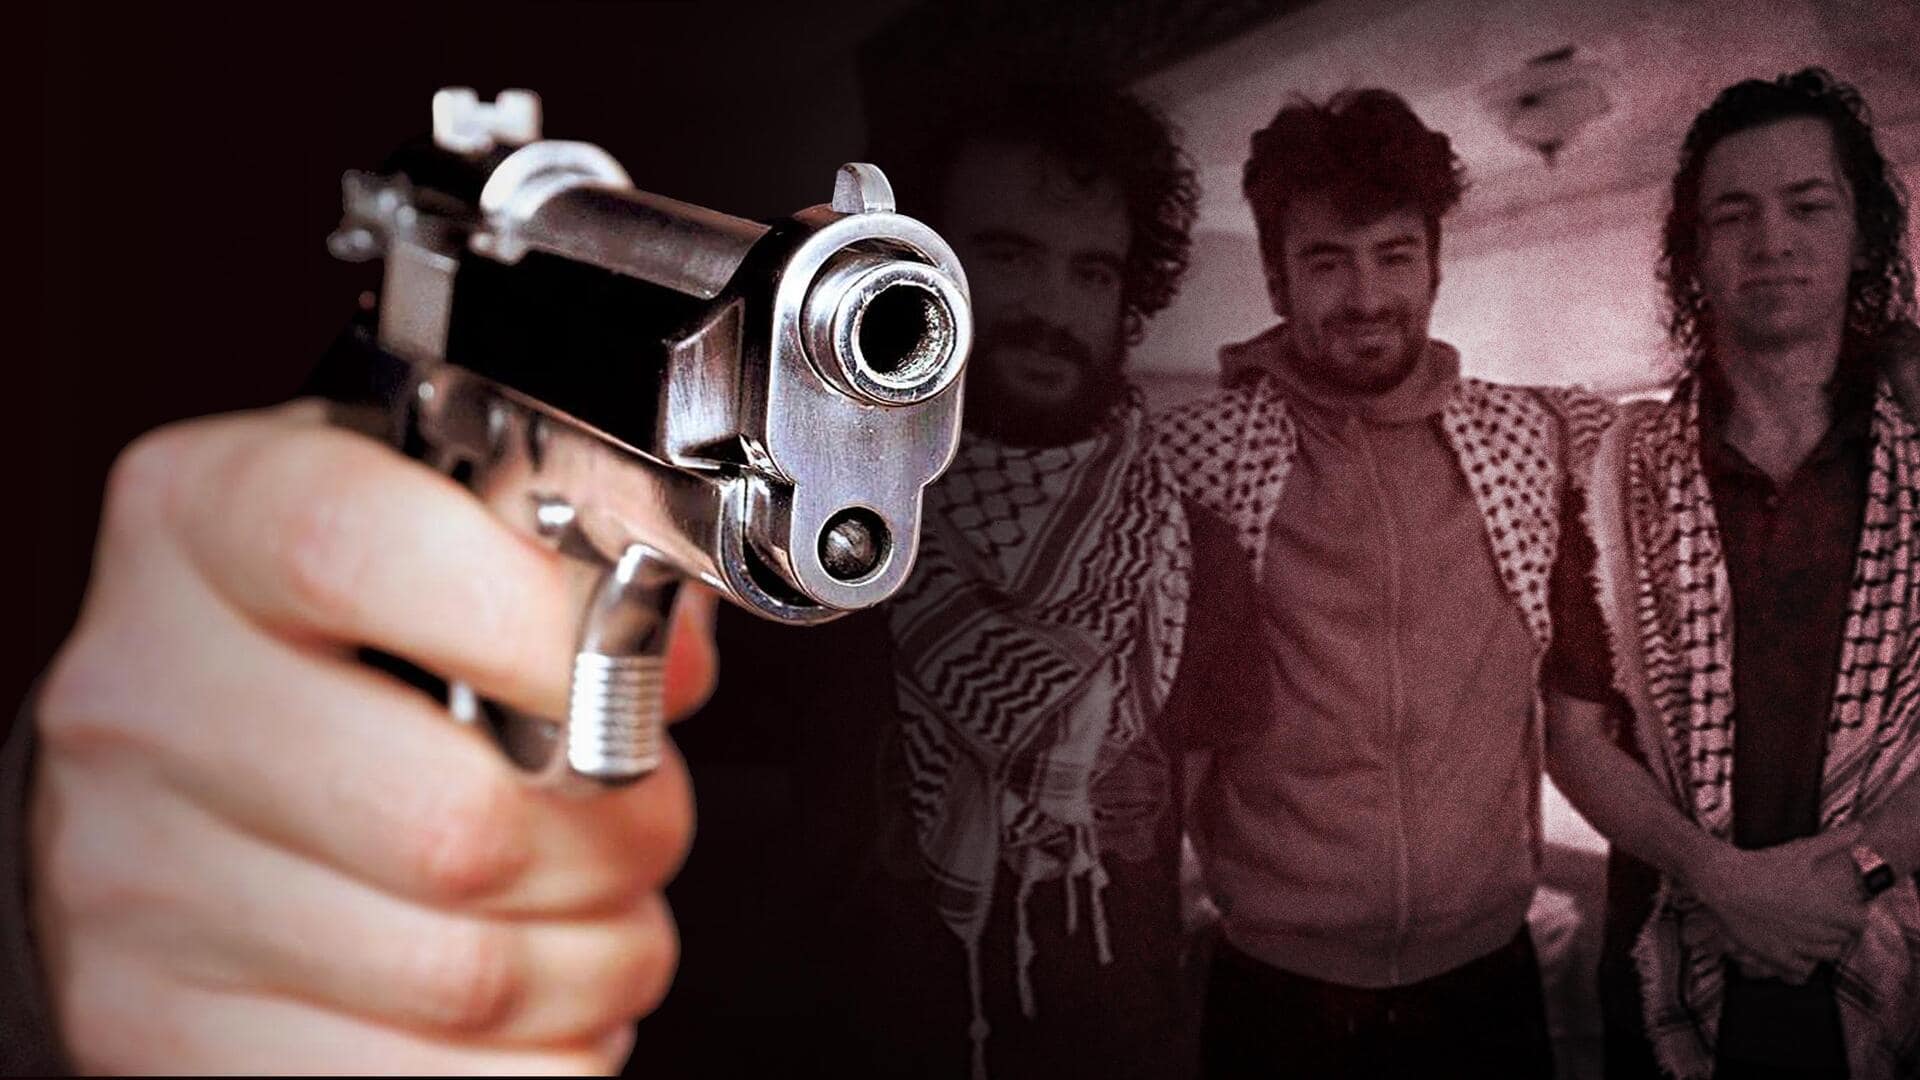 अमेरिका में फिलिस्तीनी मूल के 3 छात्रों को मारी गई गोली, नफरती अपराध होने की आशंका